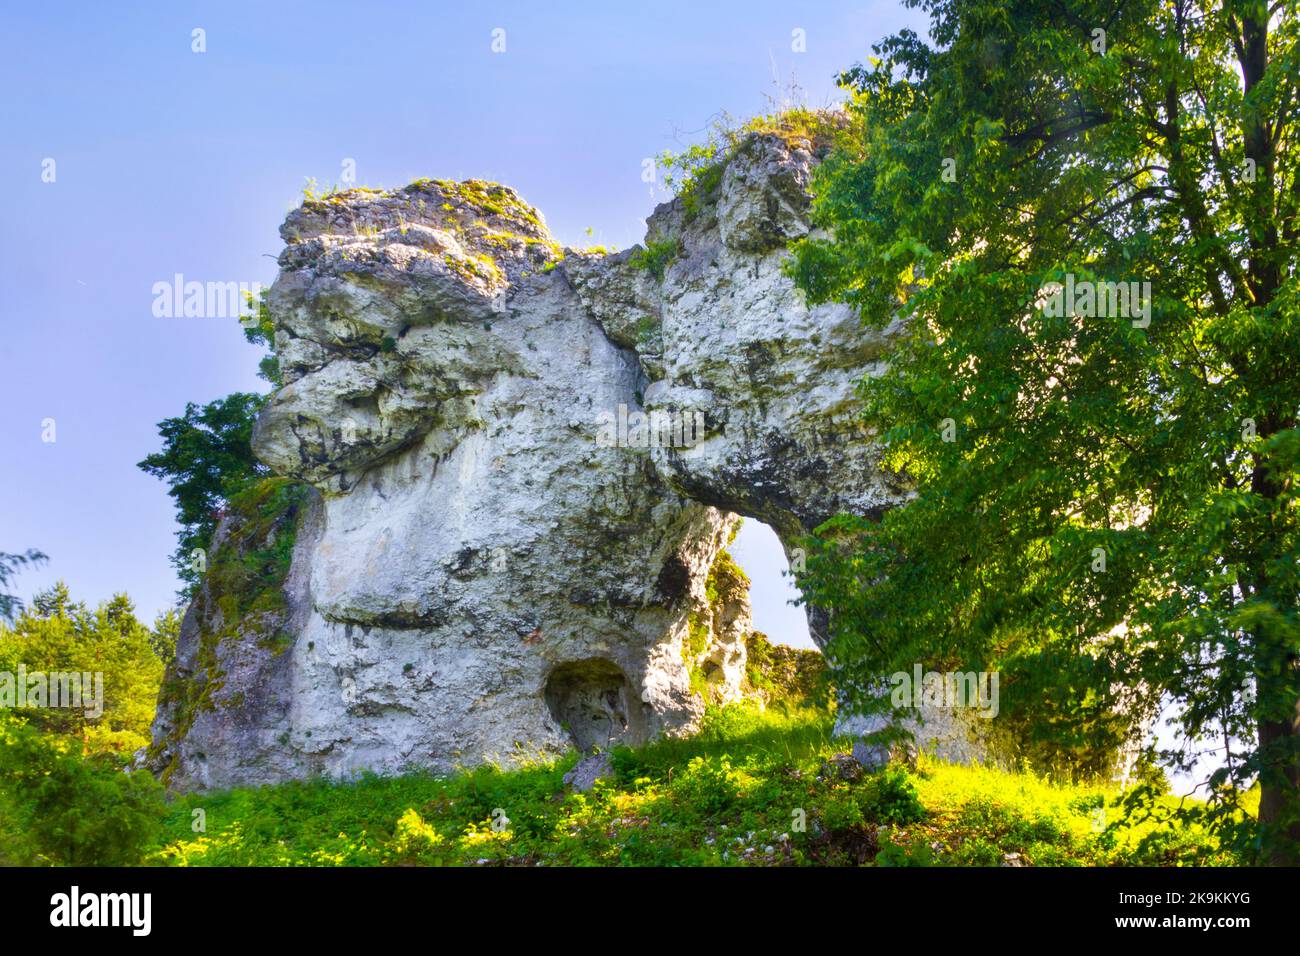 Limestone rock formation called Brama Suliszowicka gate in Poland, Jura Krakowsko-Czestochowska Upland Stock Photo